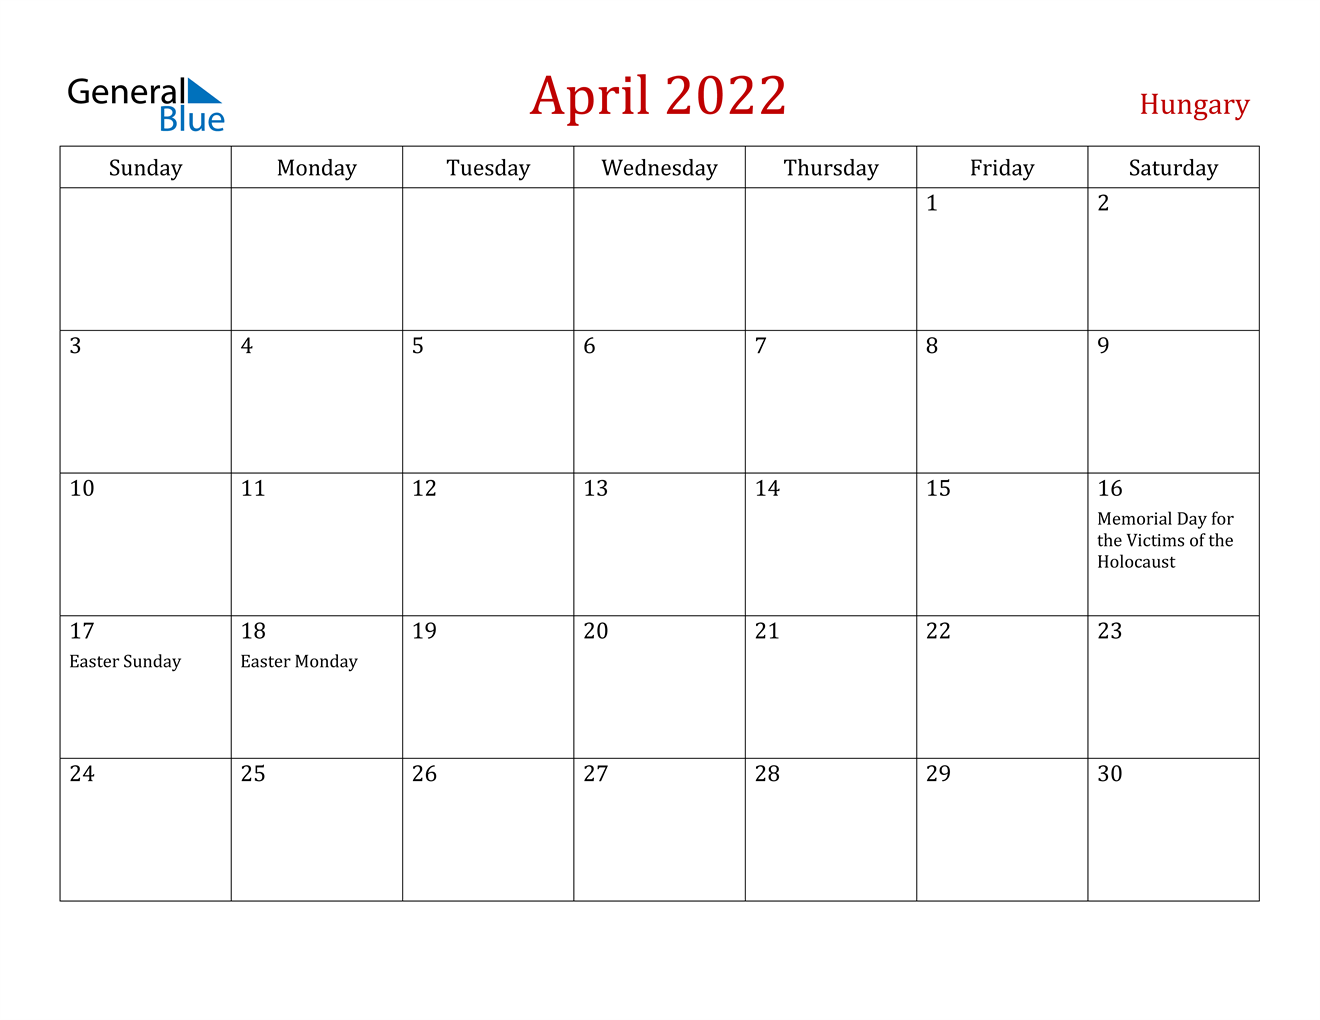 hungary april 2022 calendar with holidays